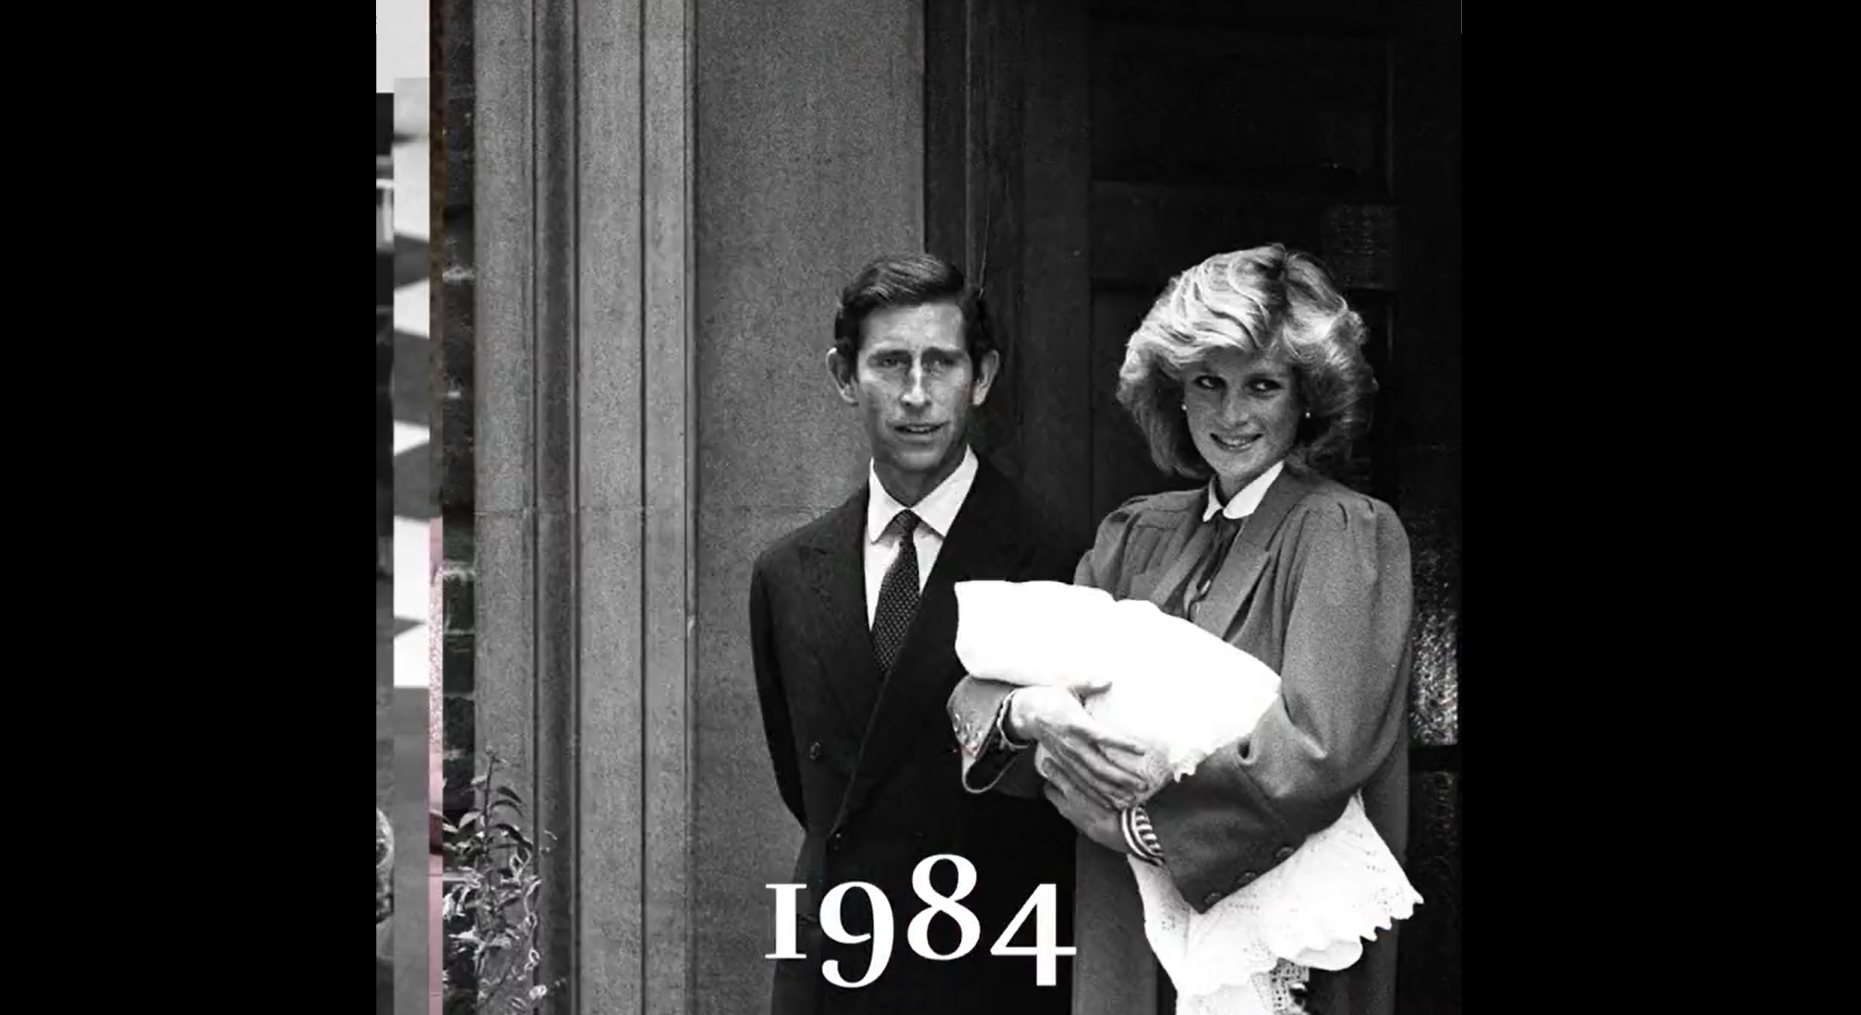 1982 - Charles and Princess Diana